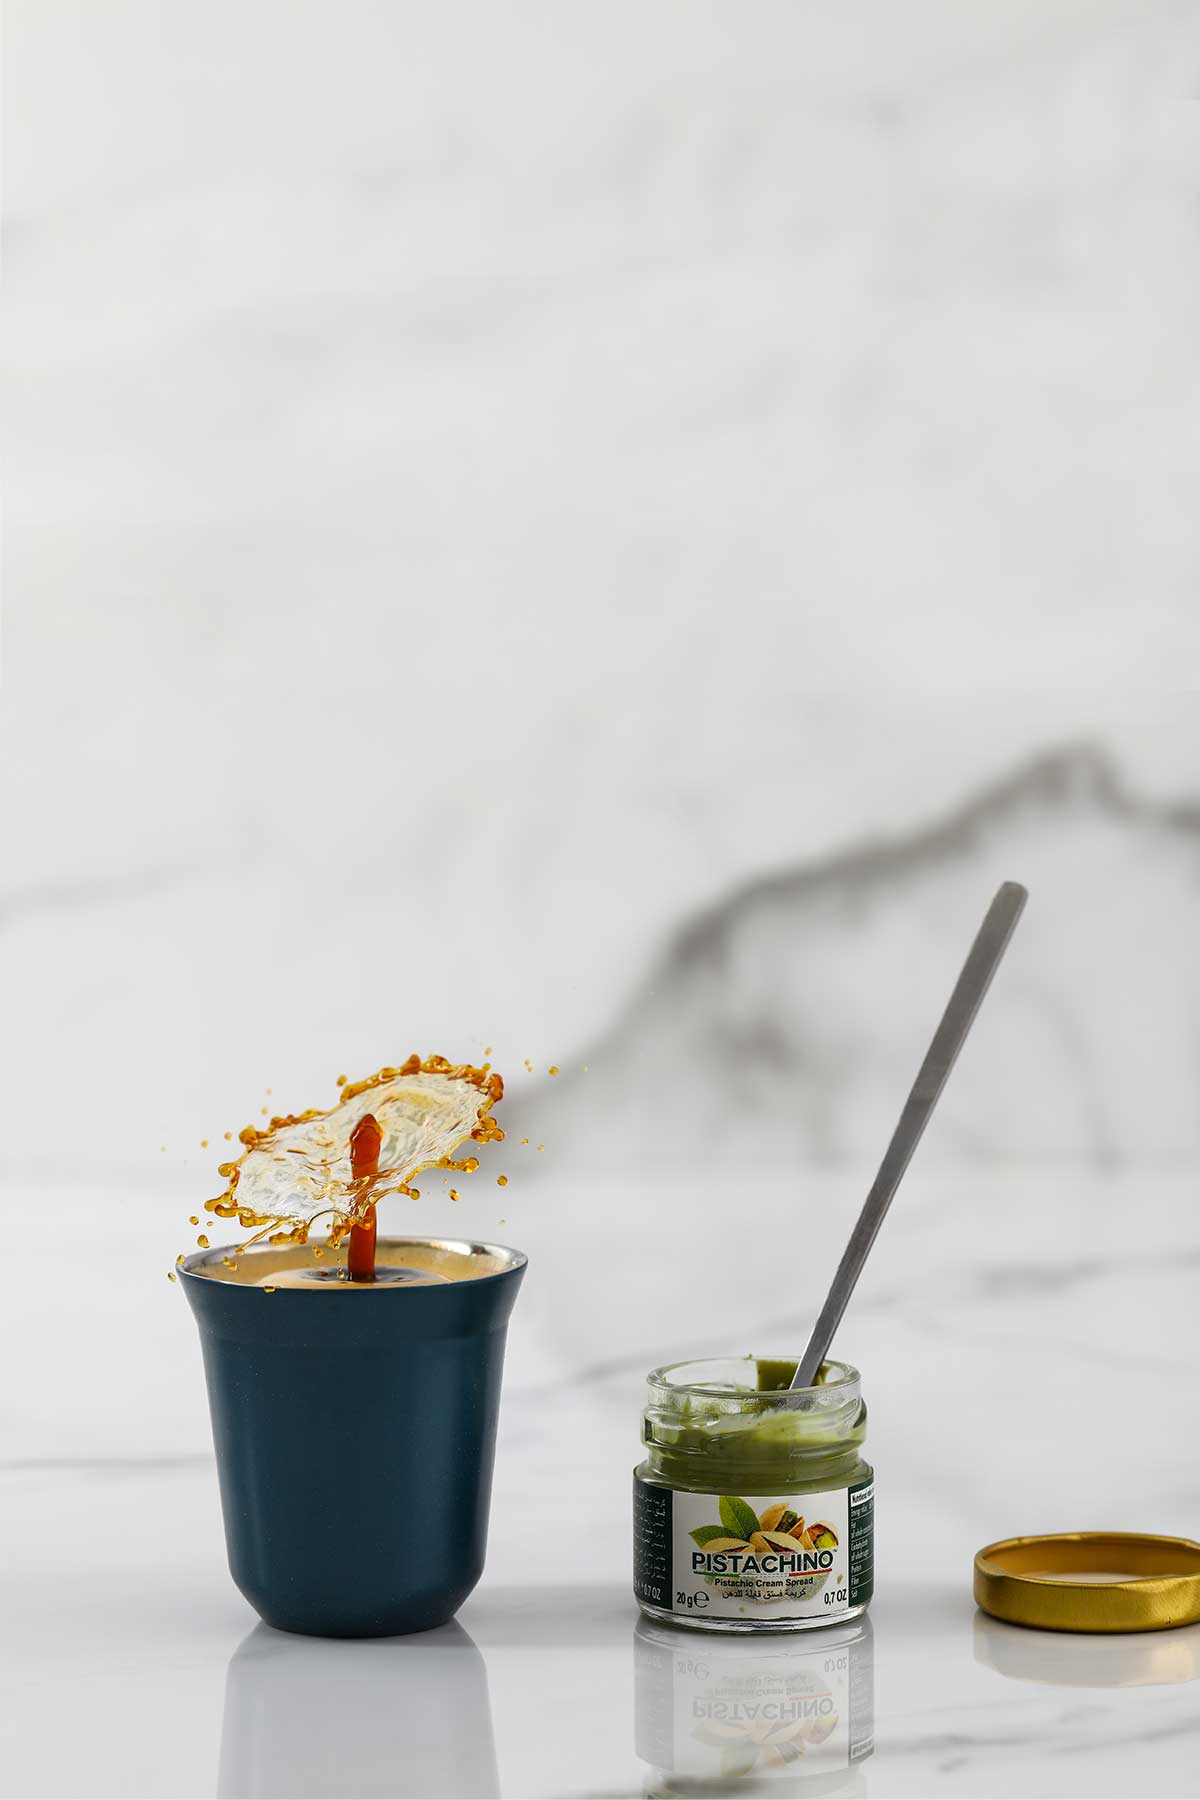 tiny-pistachio-spread-jar-with-coffee